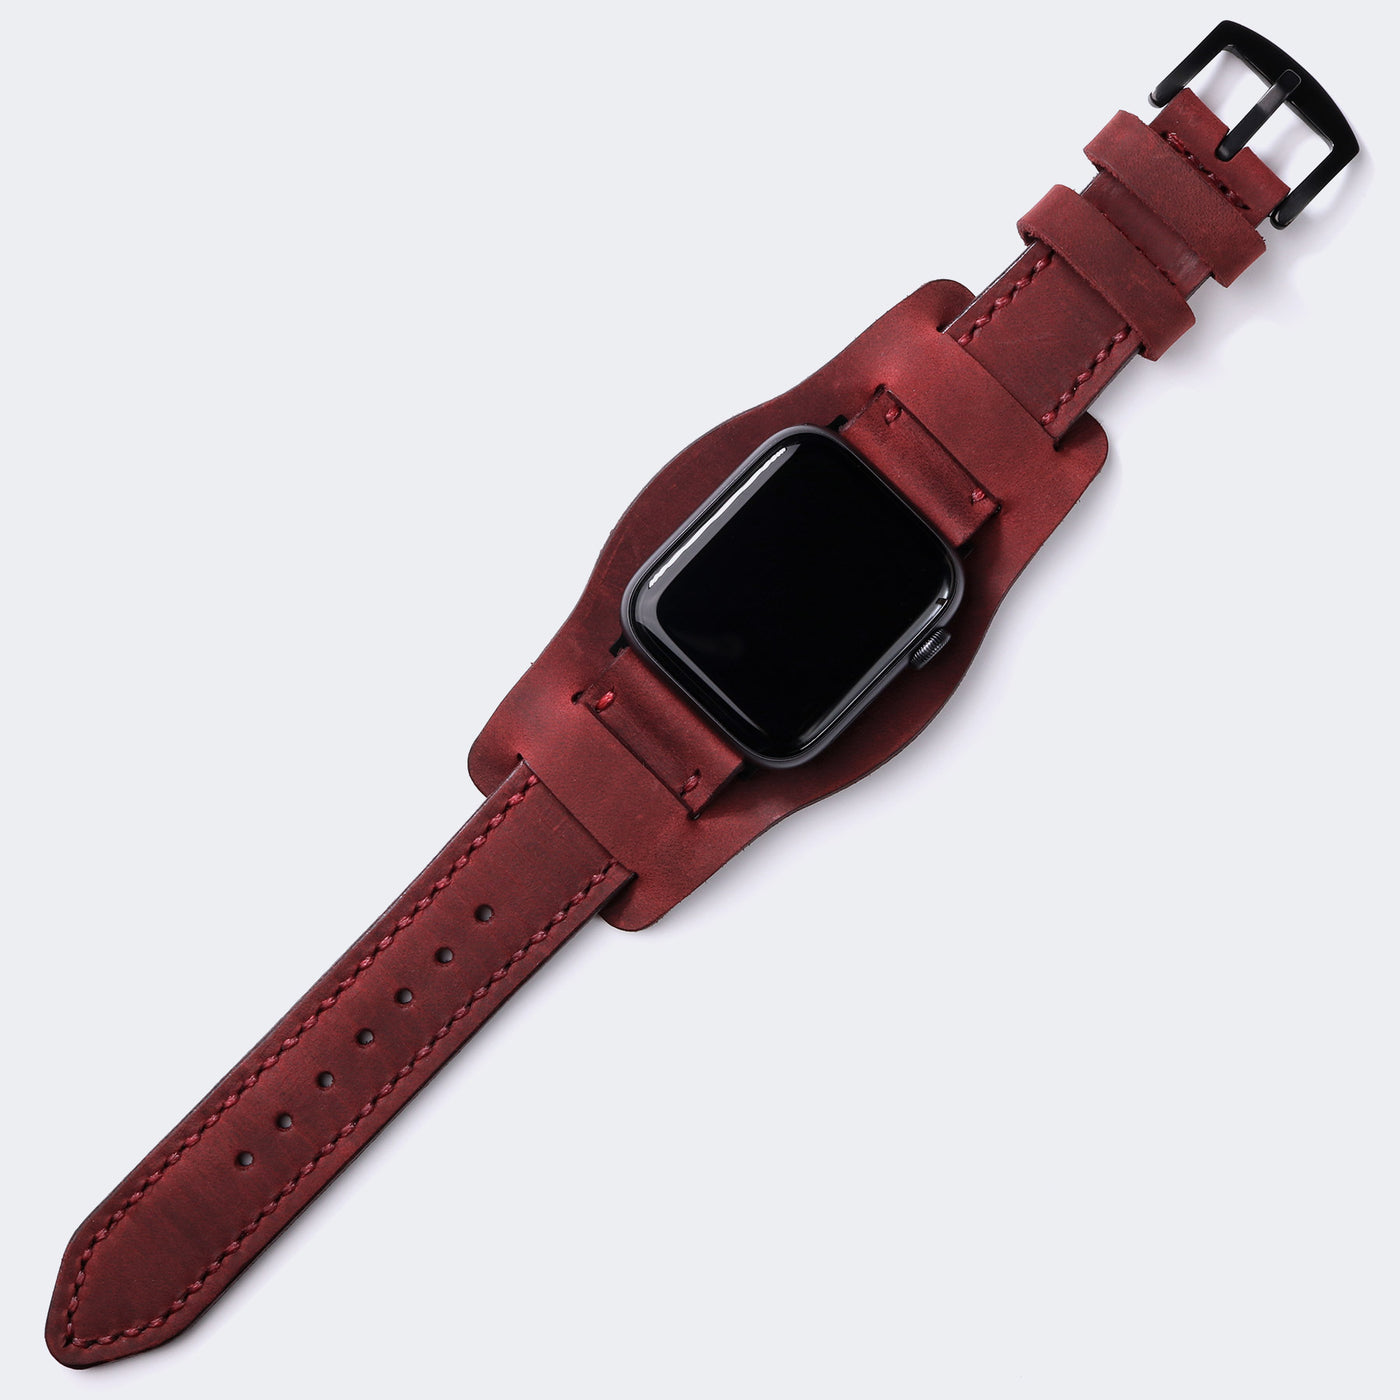 Custom Made Apple Watch Bund Strap - Burgundy